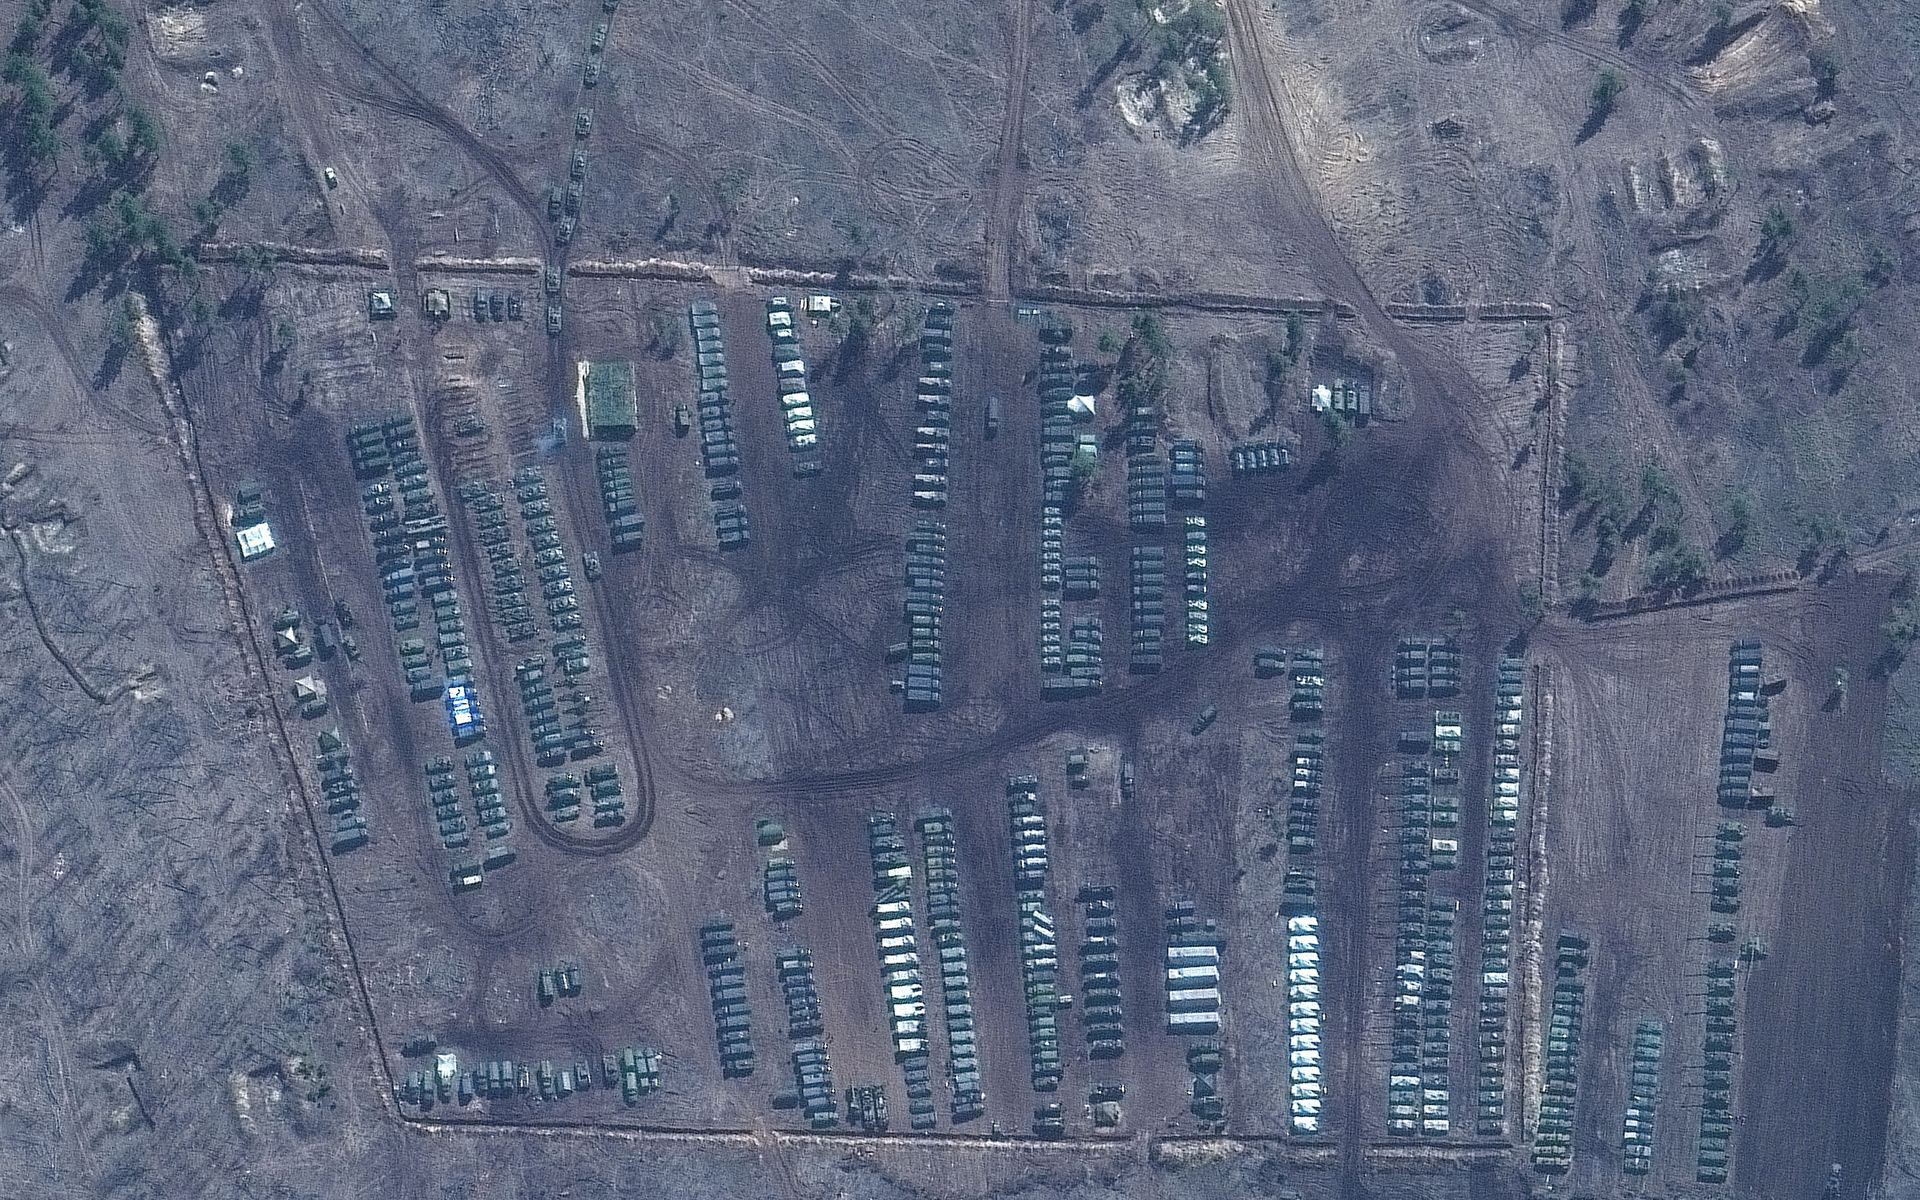 Una brigada rusa de fusileros motorizados en el área de entrenamiento de Pogonovo en Voronezh, Rusia. Imagen de satélite tomada el 10 de abril. (©2021 Maxar Technologies)